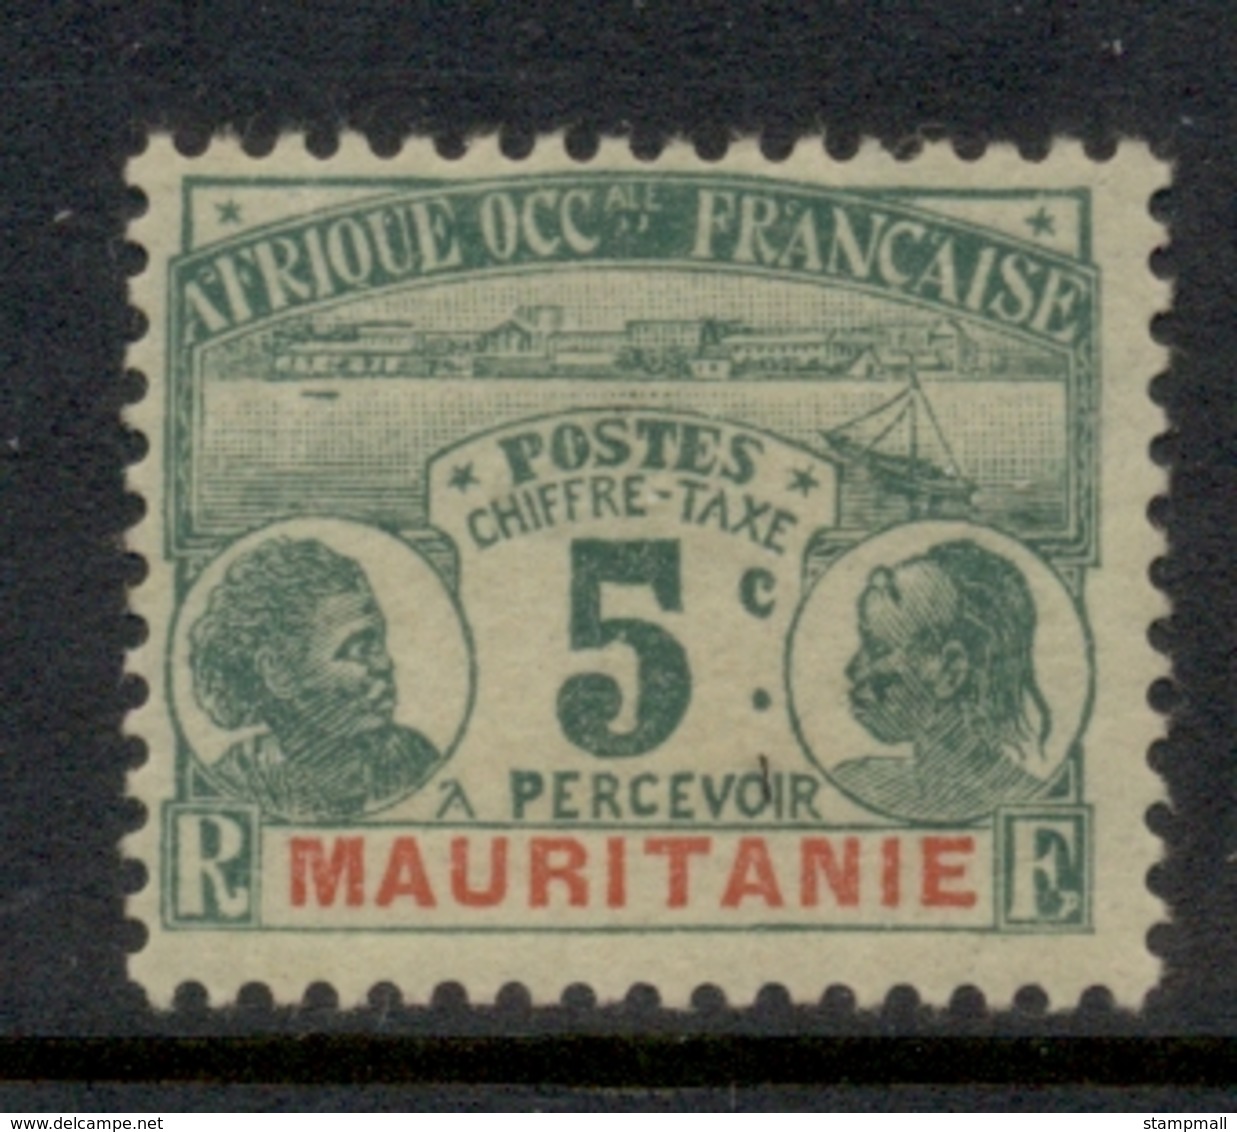 Mauritania 1906-07 Postage Dues 5c MLH - Unused Stamps